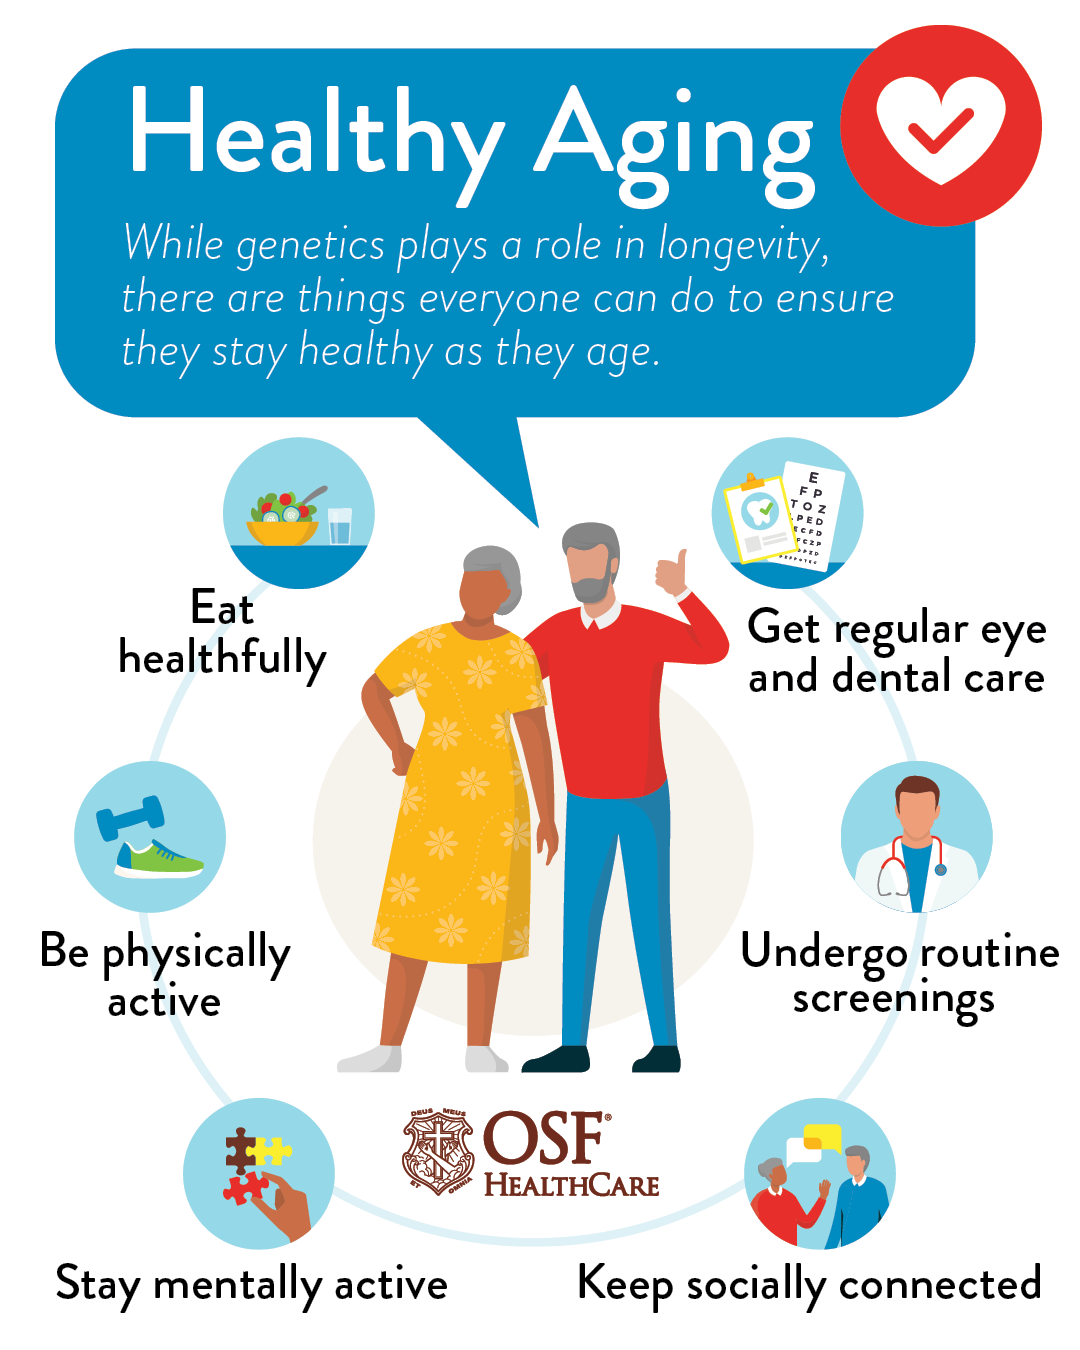 Optimal aging habits